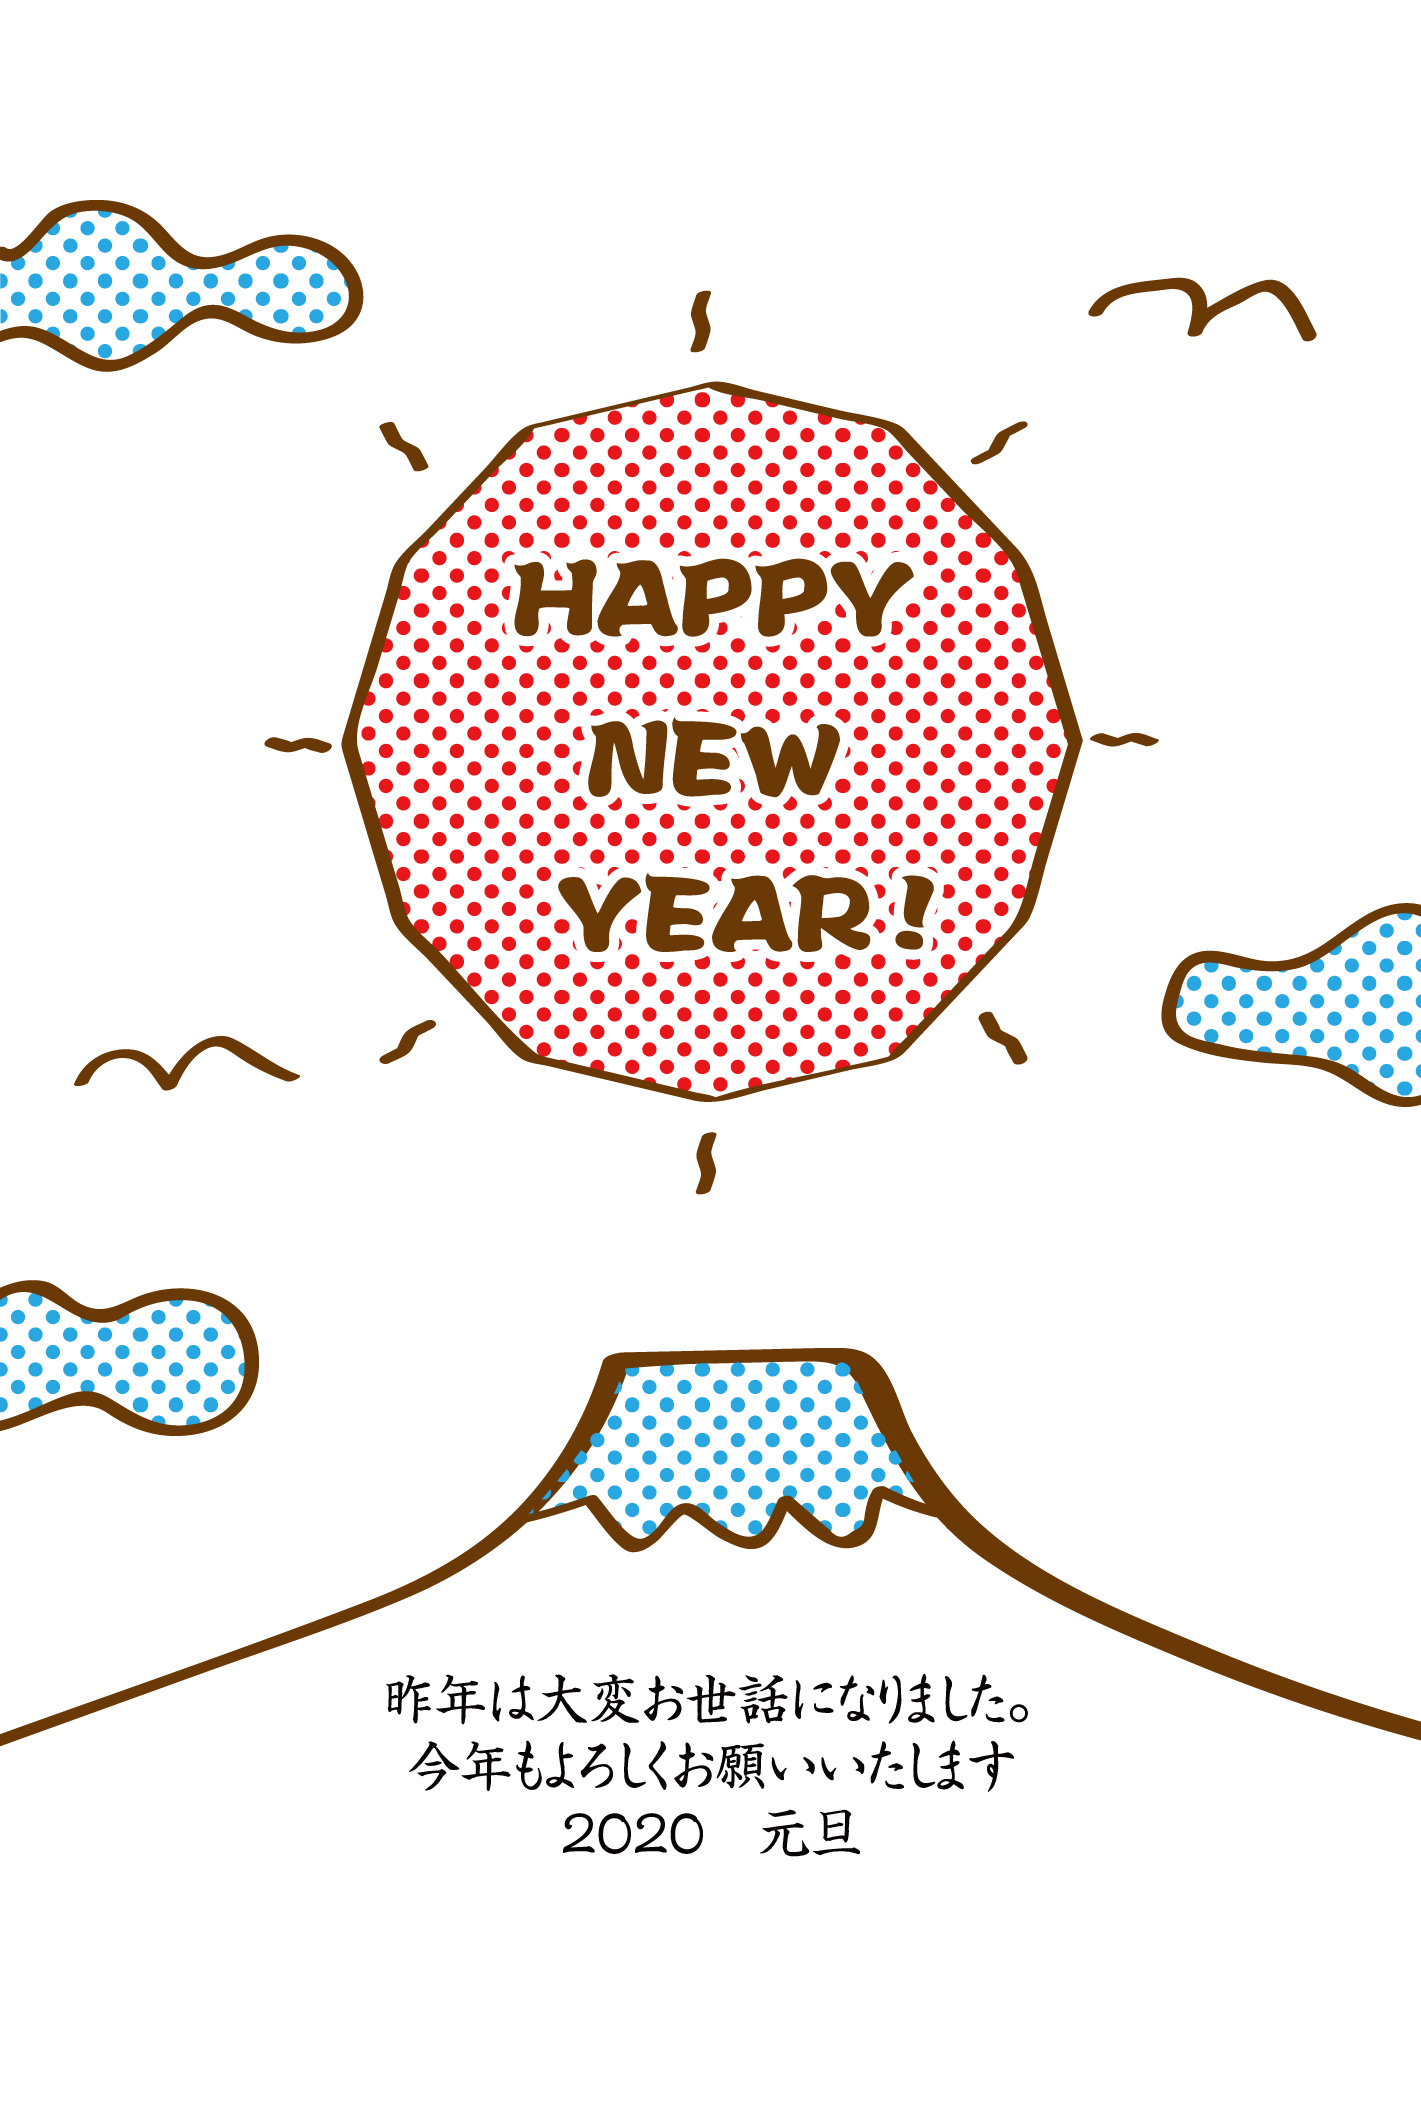 Happy New Year 富士山と初日の出のゆるかわ年賀状イラスト素材です 企業 ブランド等のロゴ をillustrator Ai Eps形式 でトレース 無料ダウンロード